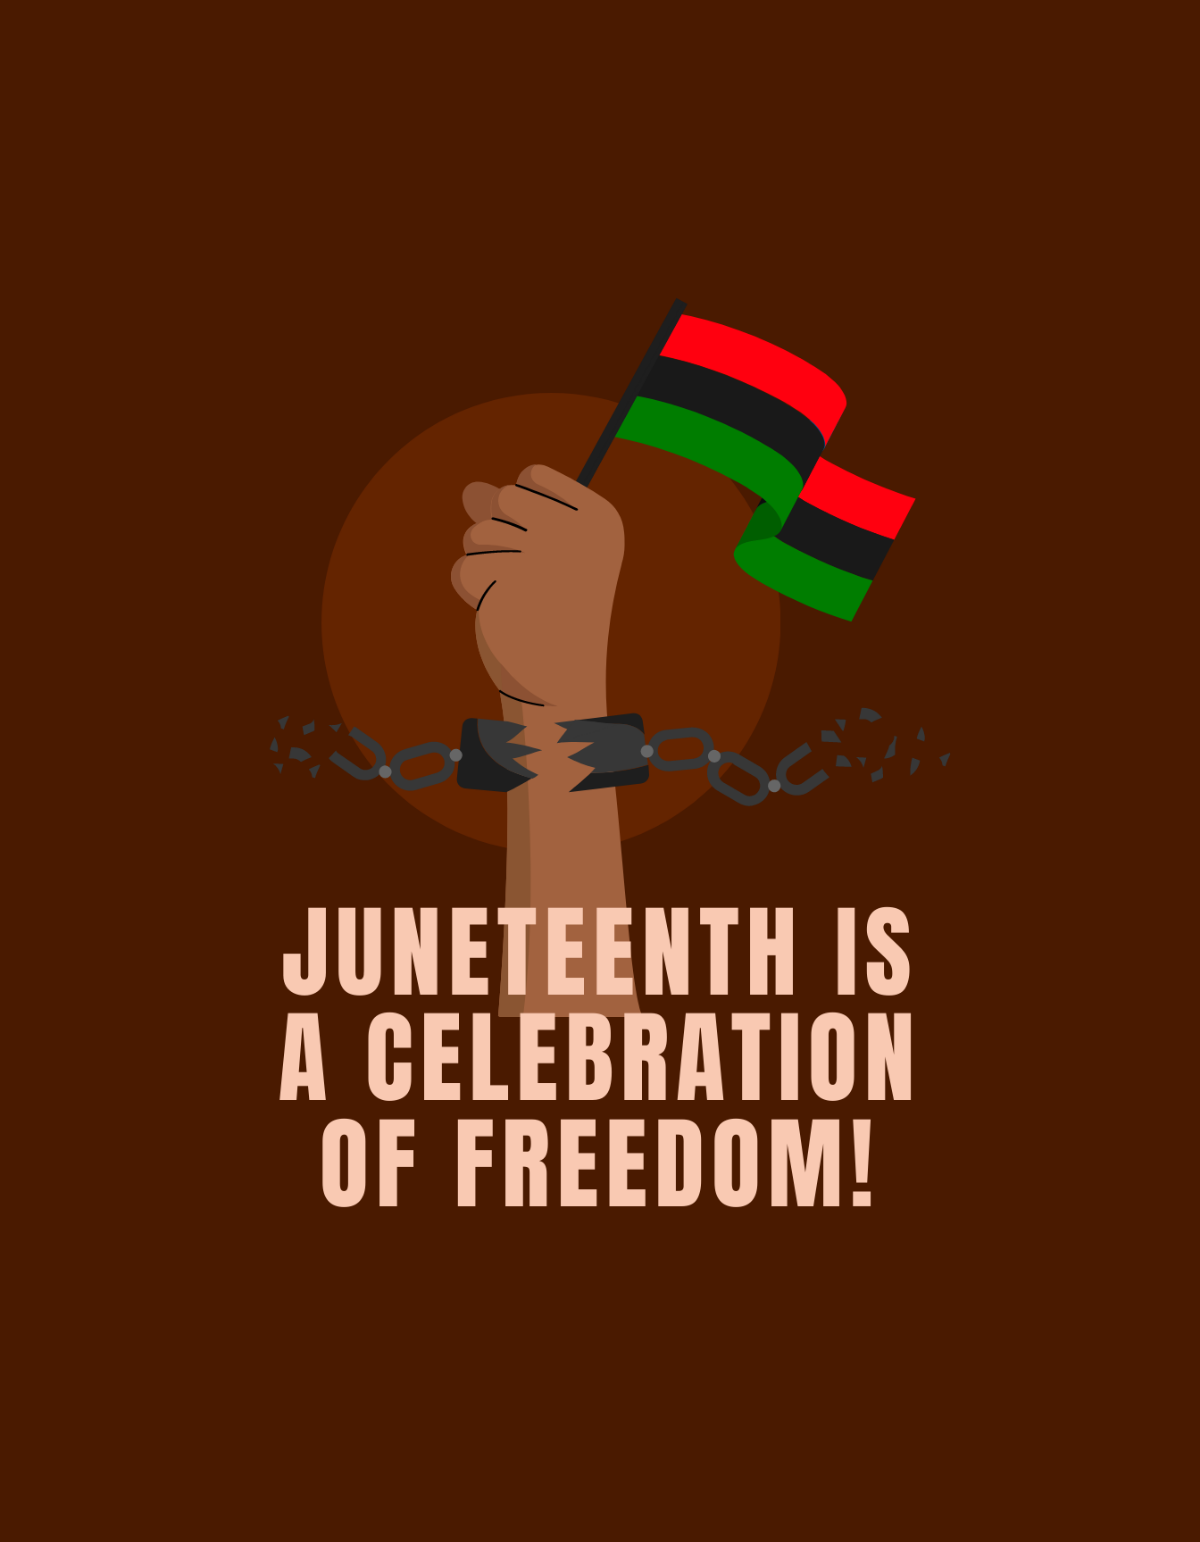 Juneteenth Freedom T Shirt Template